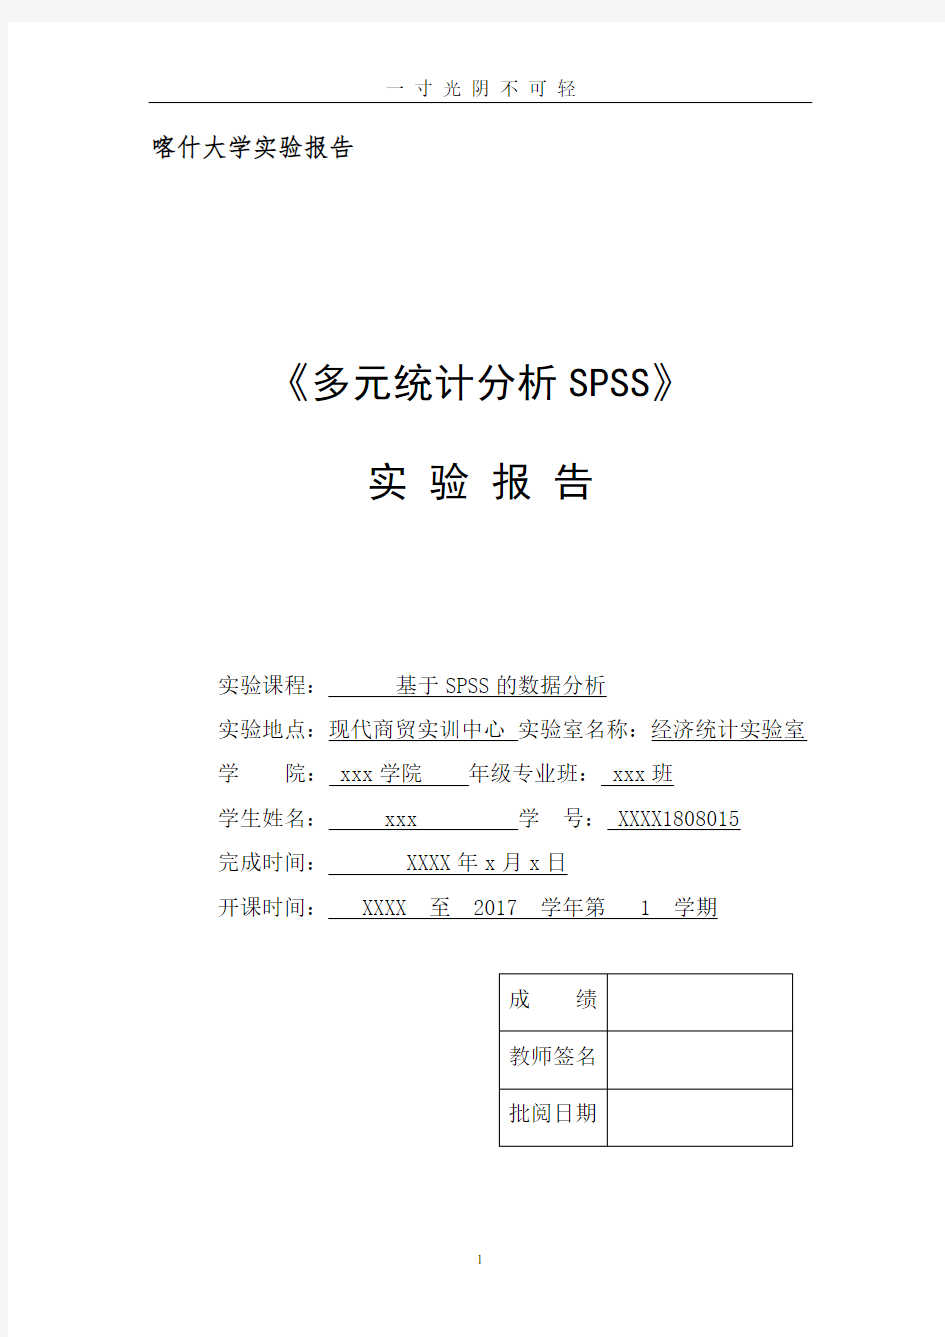 SPSS因子、聚类案例分析报告.pdf